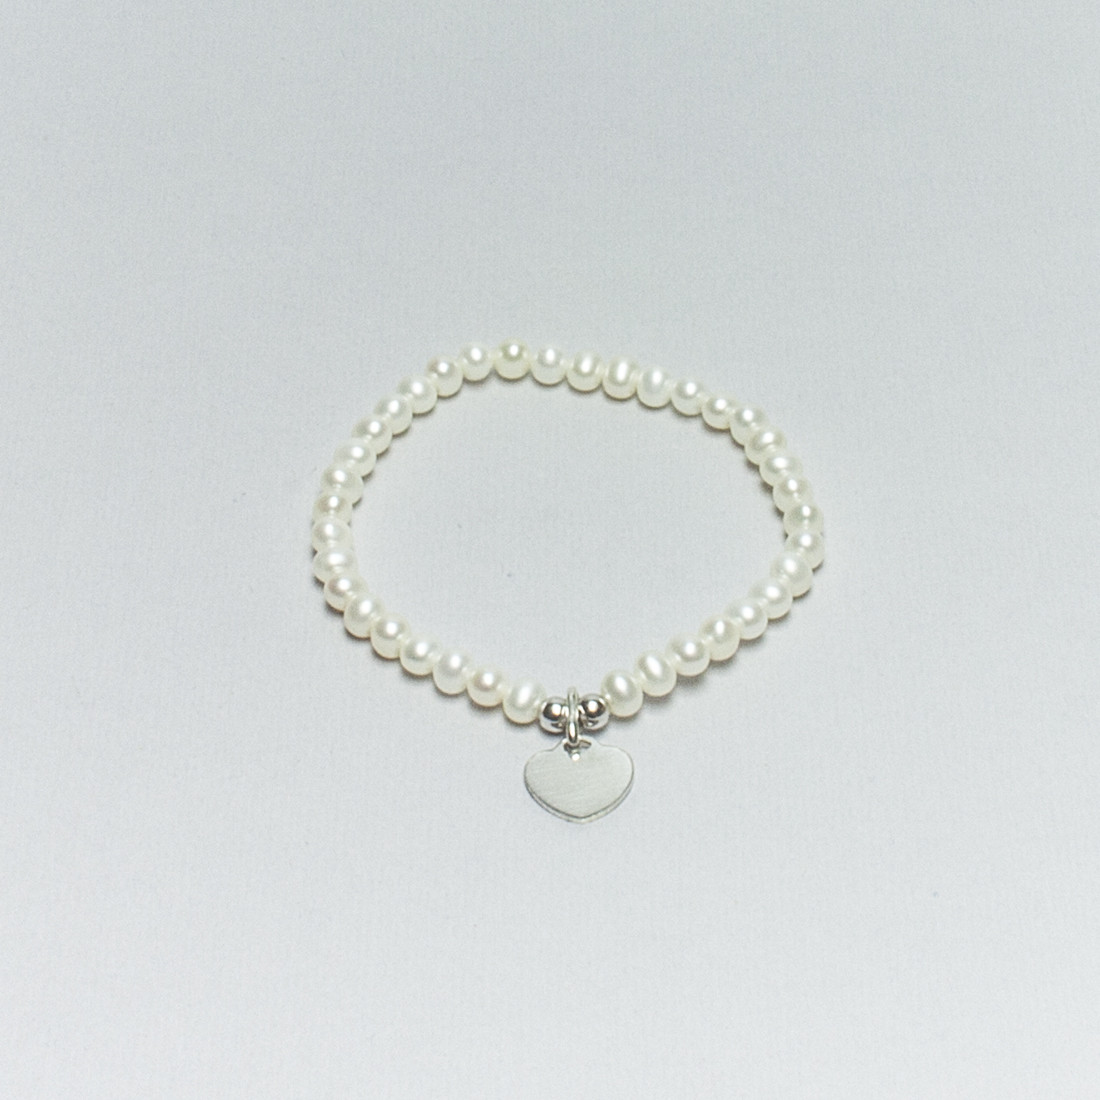 Bracciale elastico di Perle Bianche d'Acqua Dolce con cuore in Argento